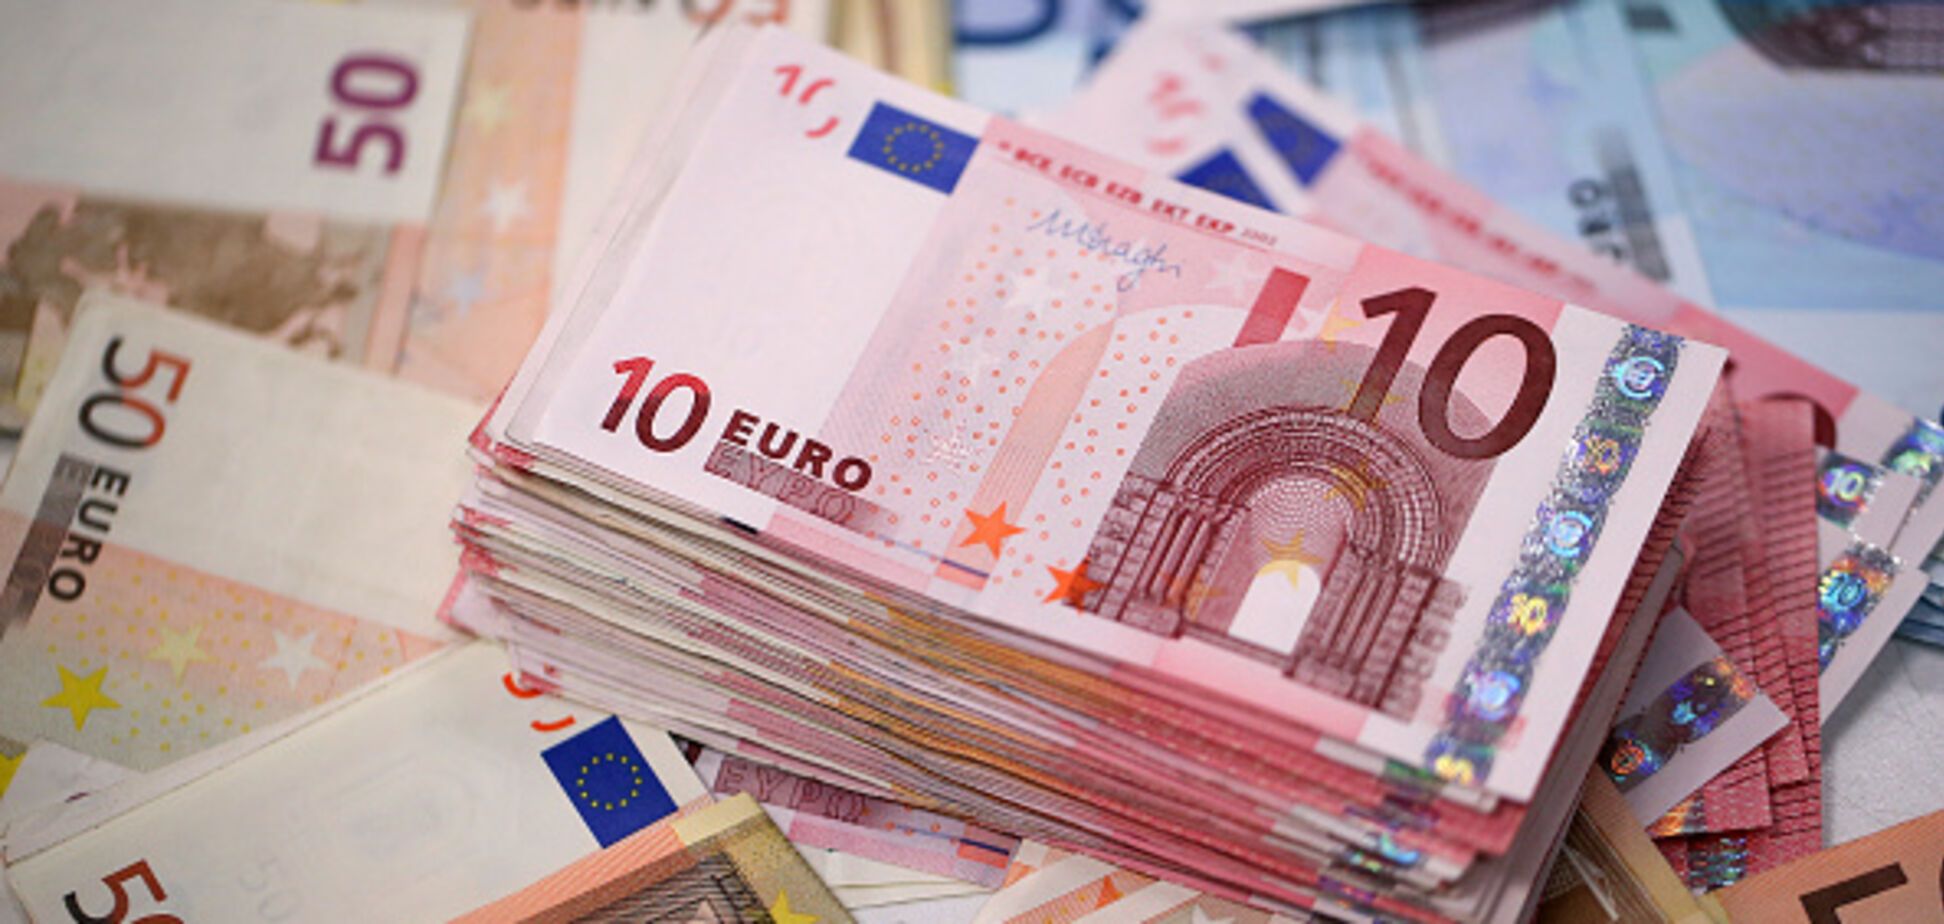 Доллар и евро после выходных подорожают: обнародован курс валют